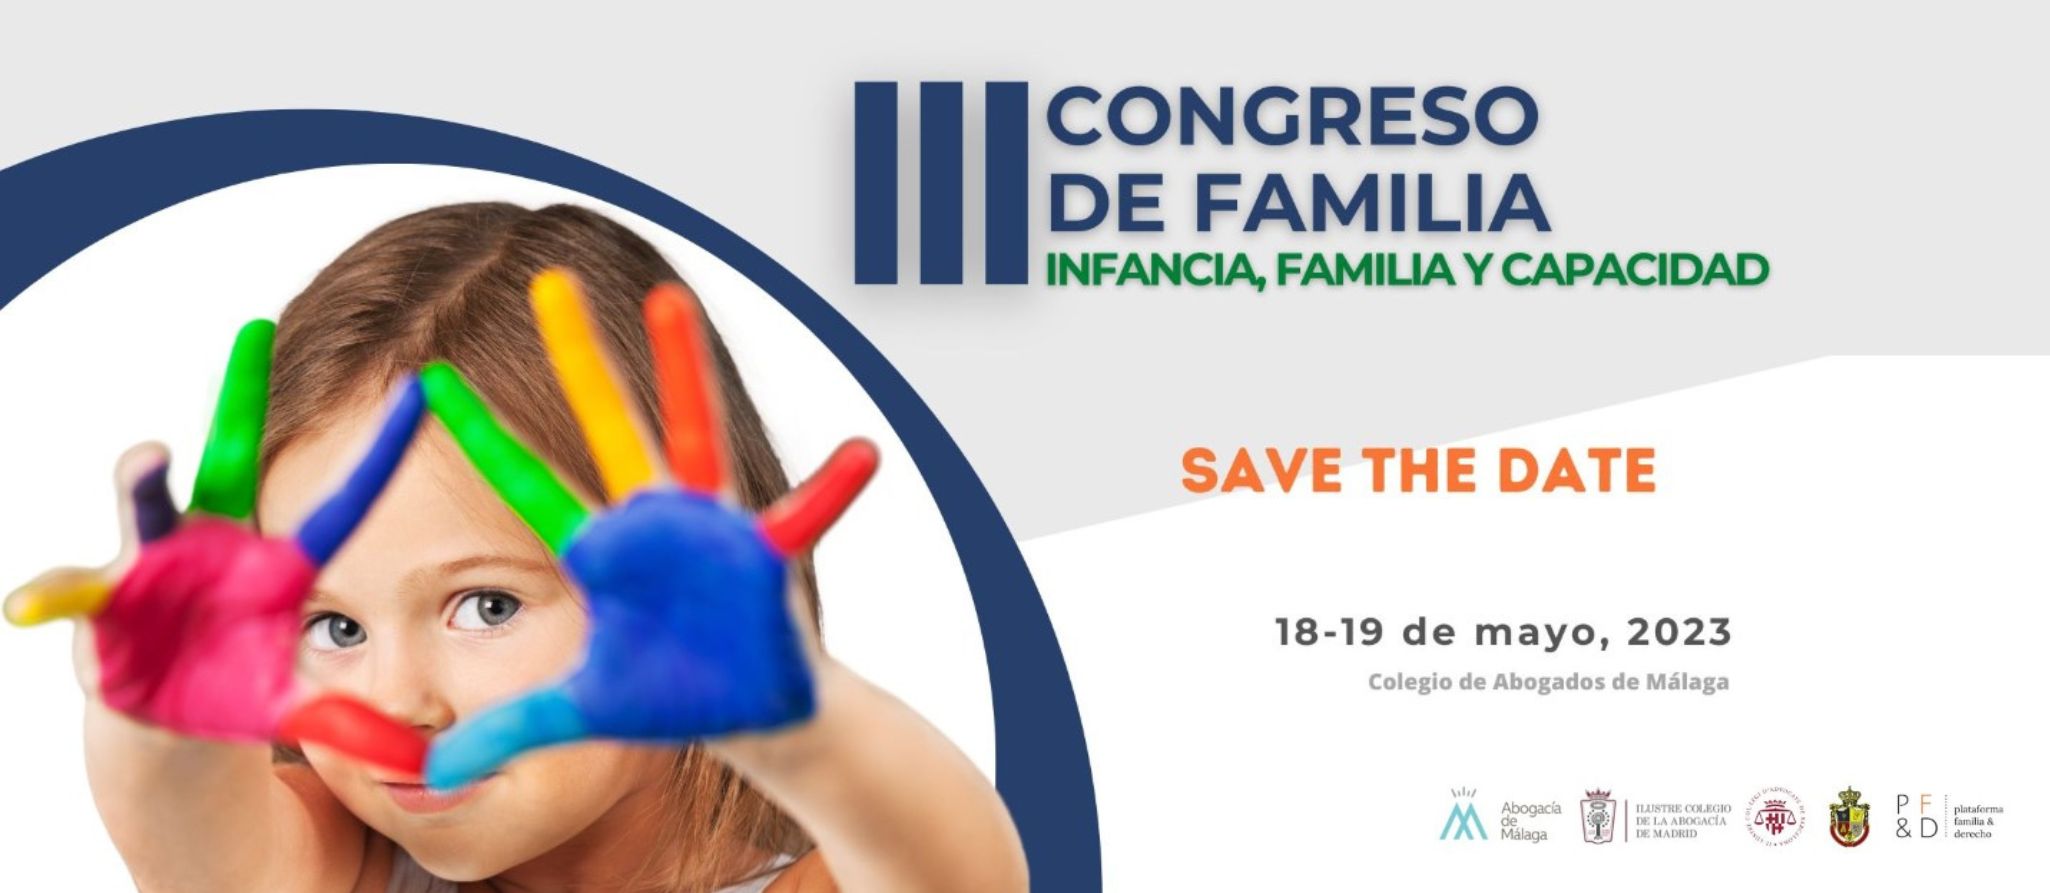 Los días 18 y 19 de mayo se celebrará el III Congreso de Familia, Infancia y Capacidad ¡Inscripciones abiertas!